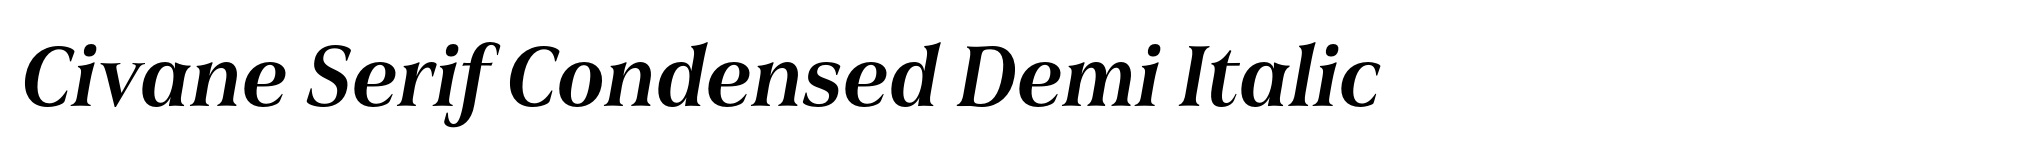 Civane Serif Condensed Demi Italic image